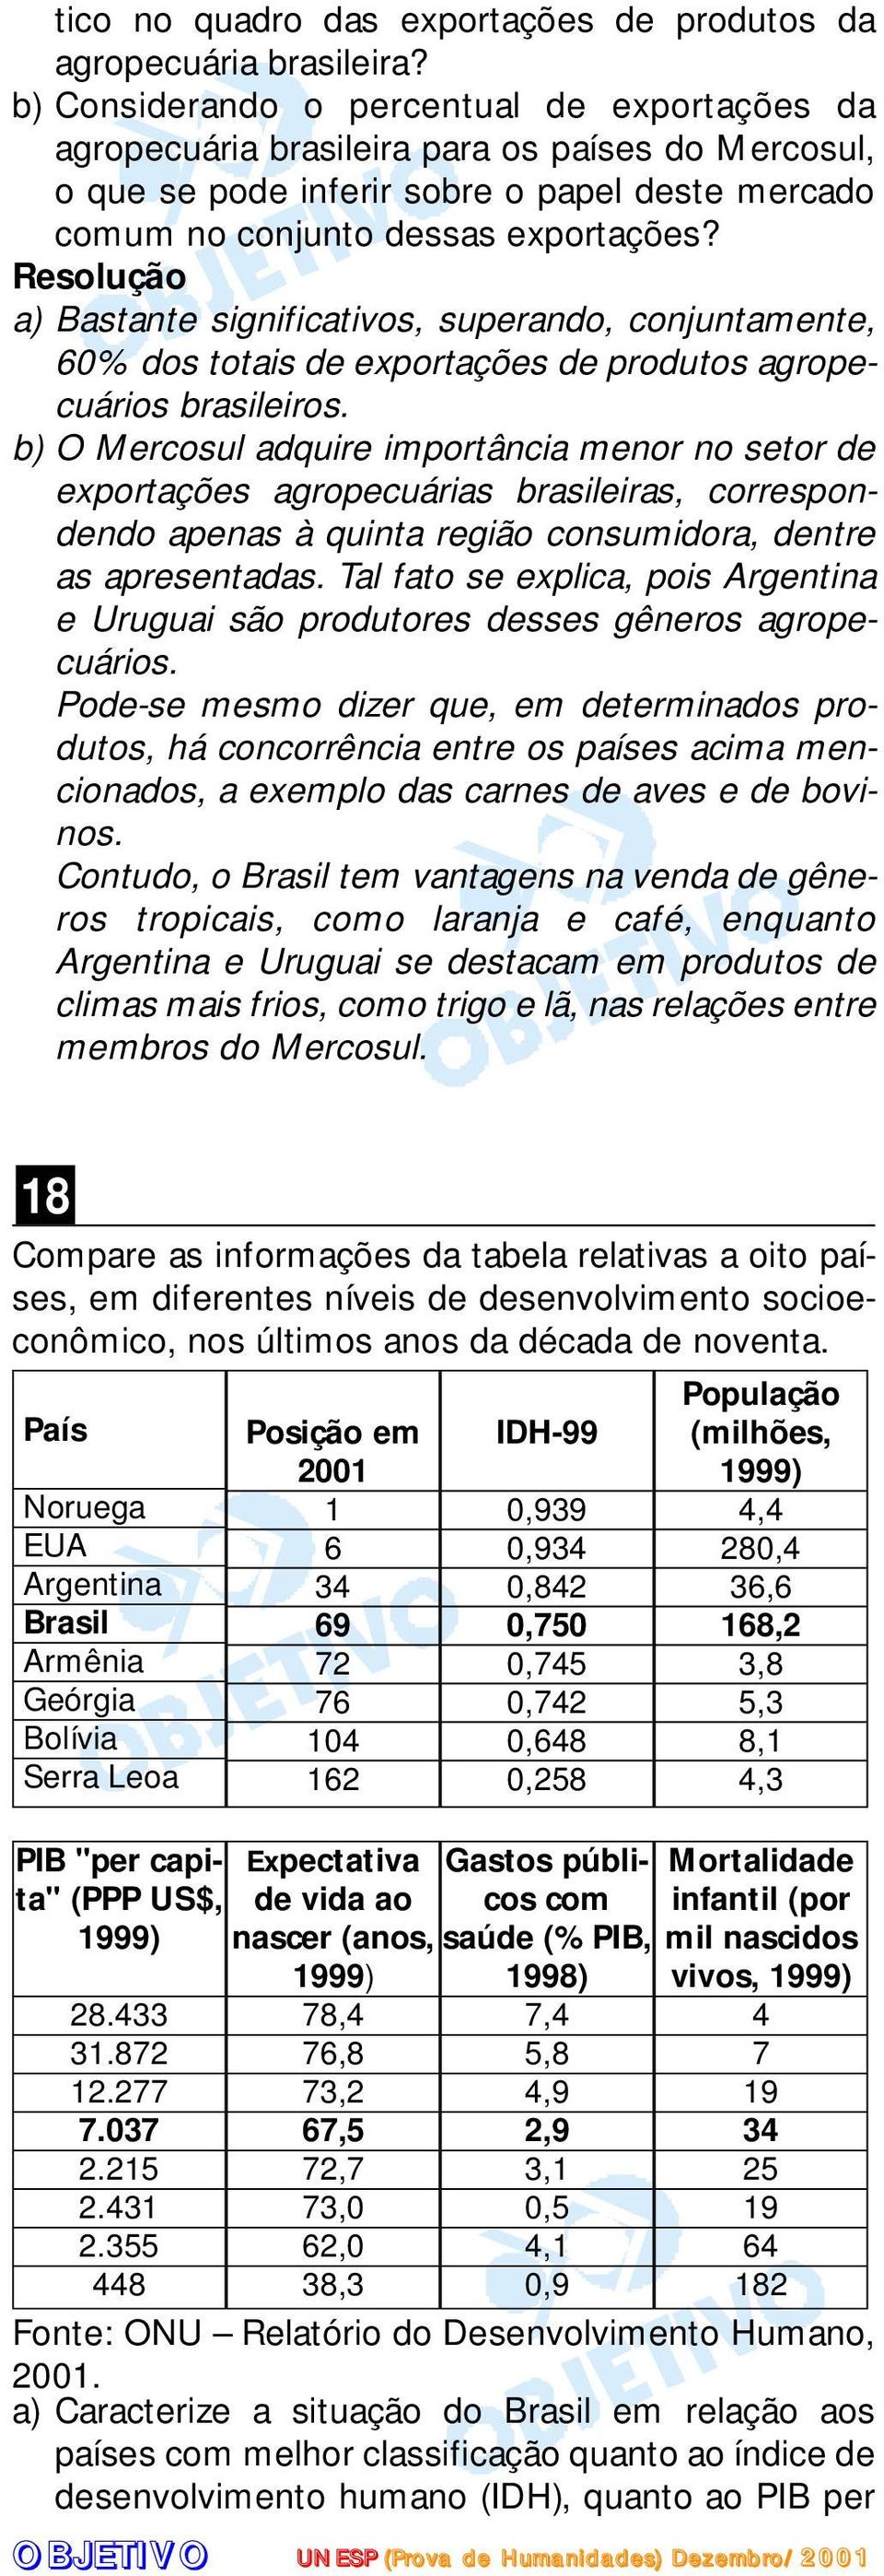 a) Bastante significativos, superando, conjuntamente, 60% dos totais de exportações de produtos agropecuários brasileiros.